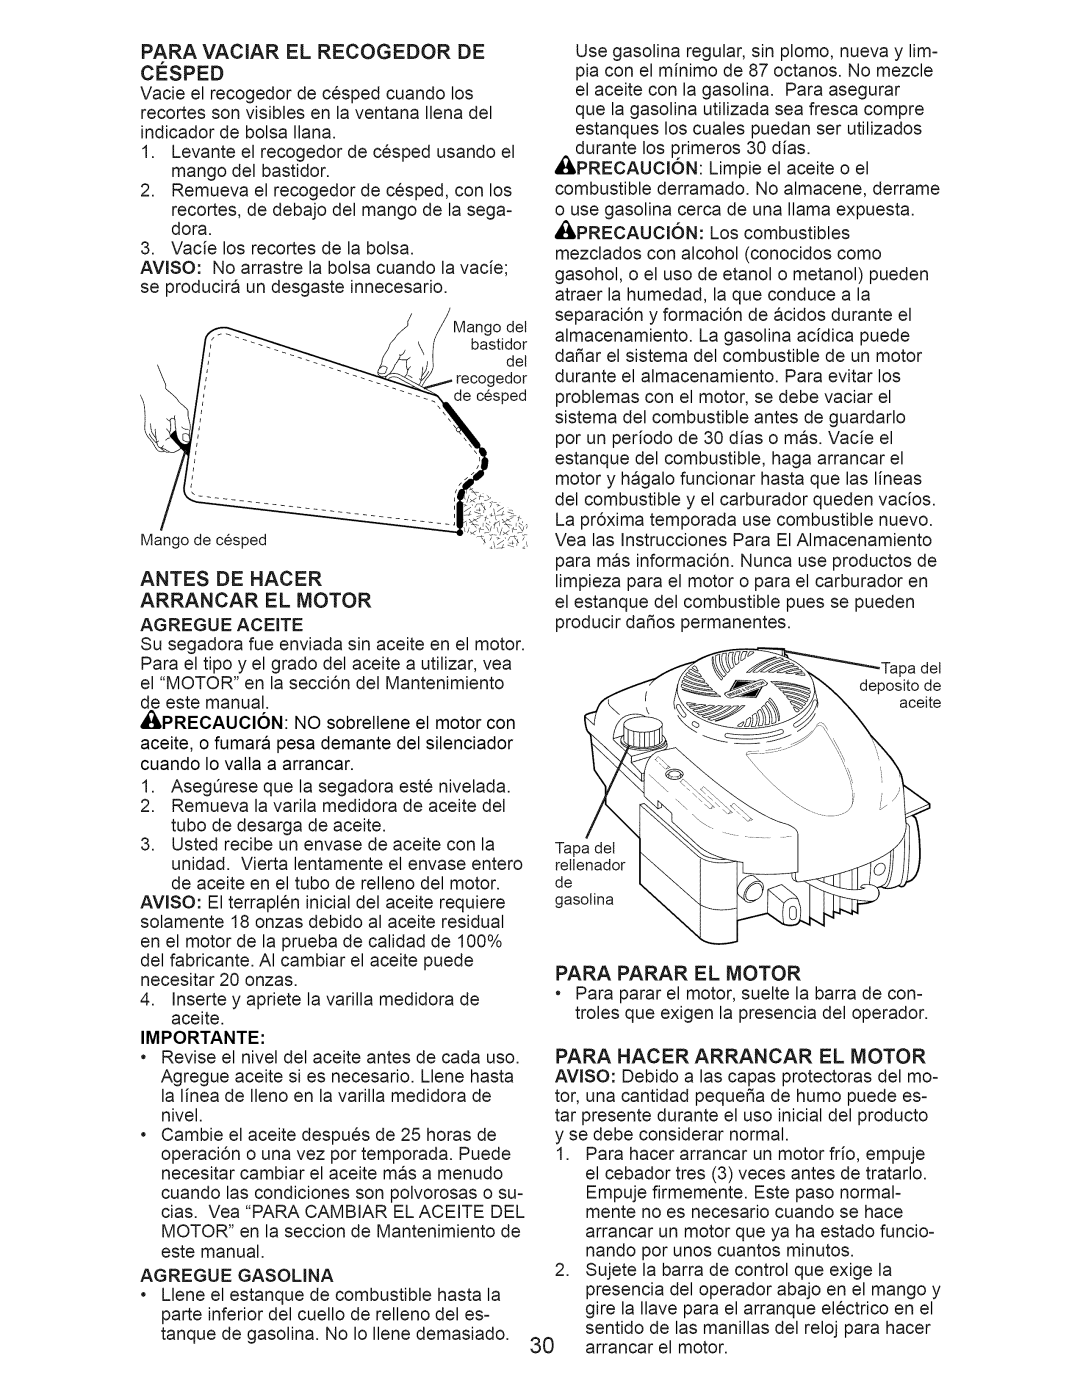 Craftsman 917.374366, 700 Series owner manual Antes De Hacer Arrancar El Motor, Para Parar El Motor 